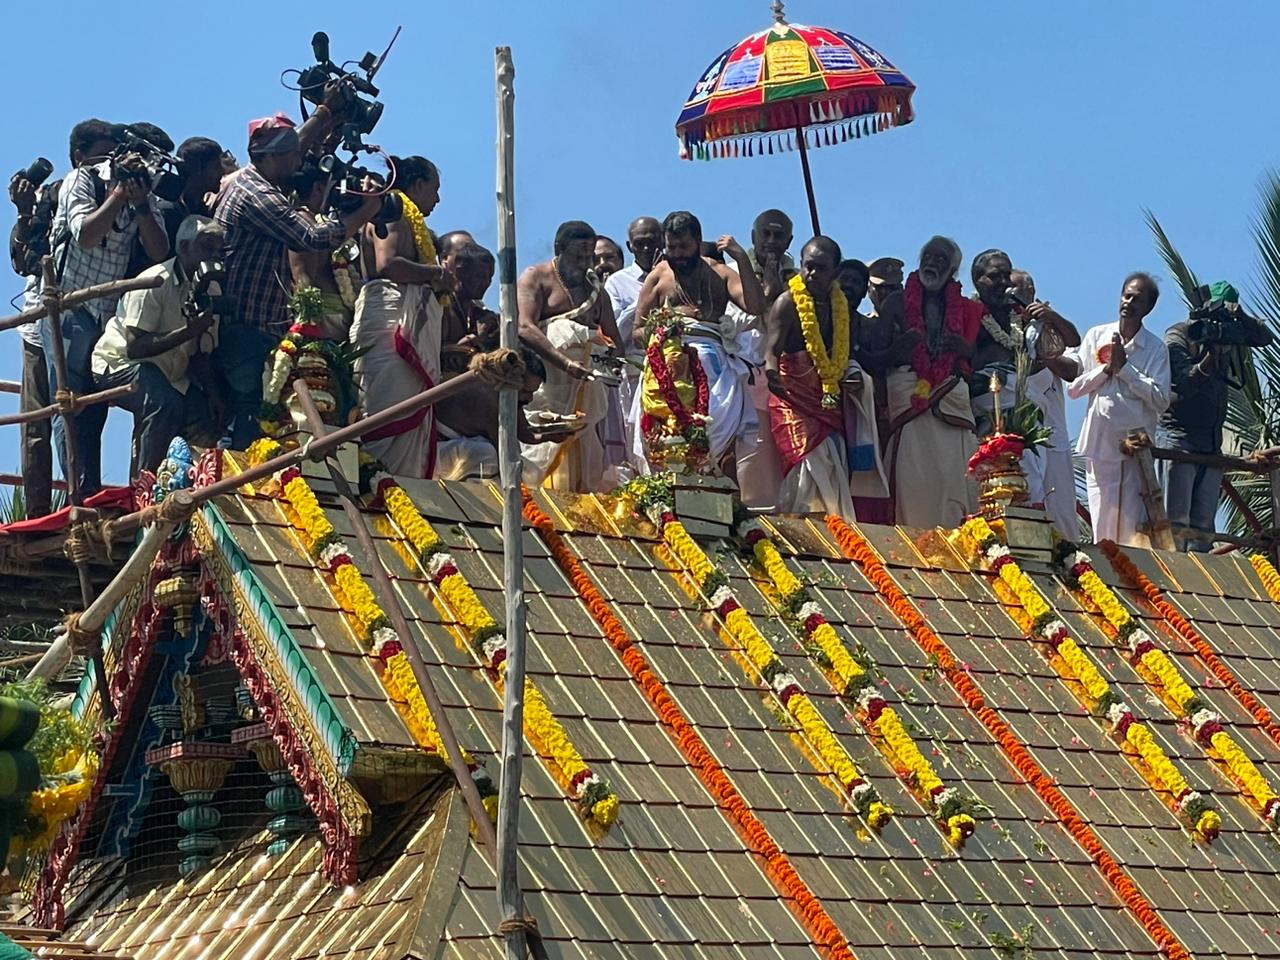 Kumbabishekam of Ayyappa Temple in Raja Annamalaipuram performed today